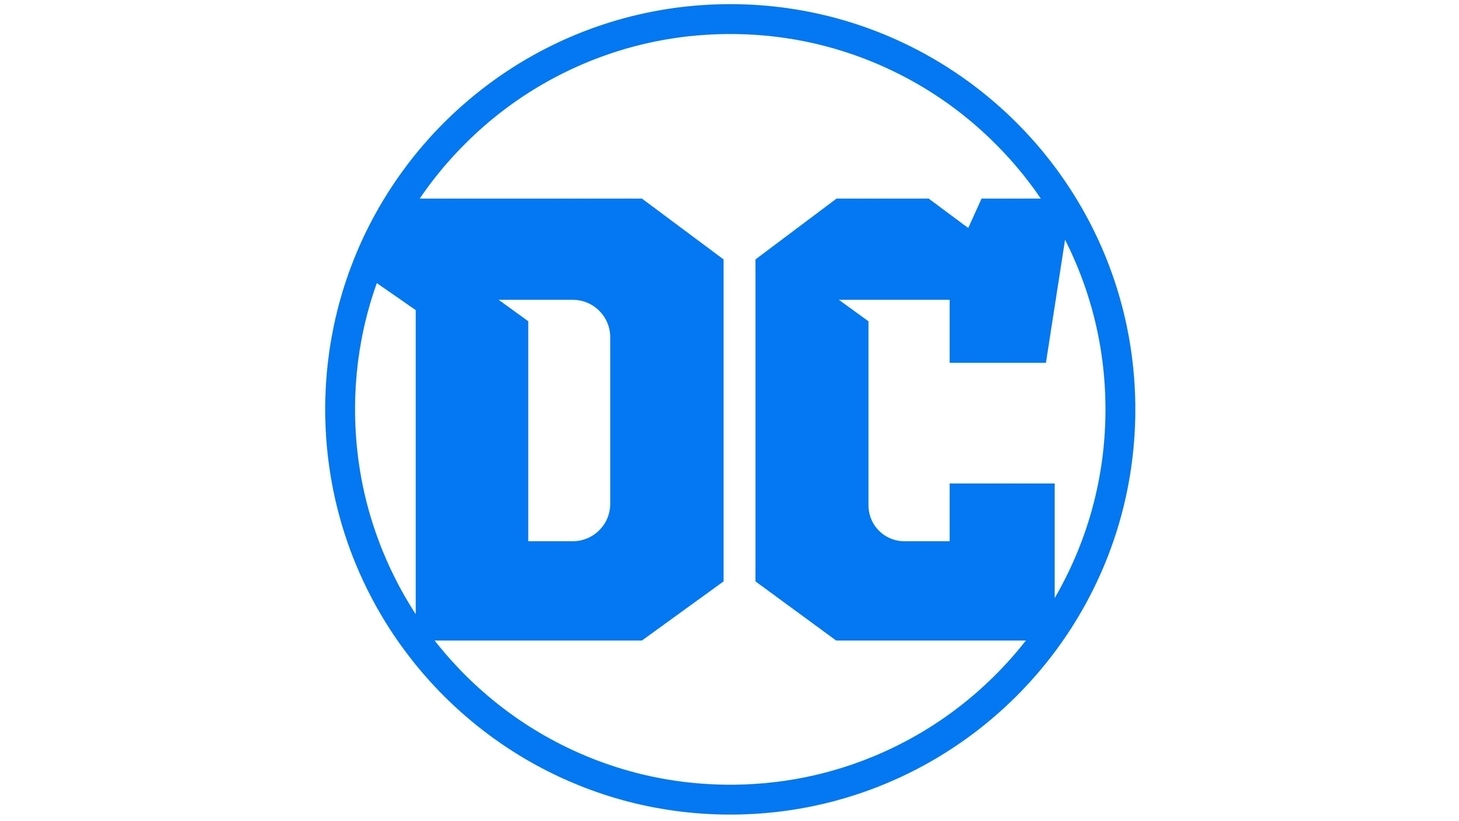 Dc comics sign 2016 present